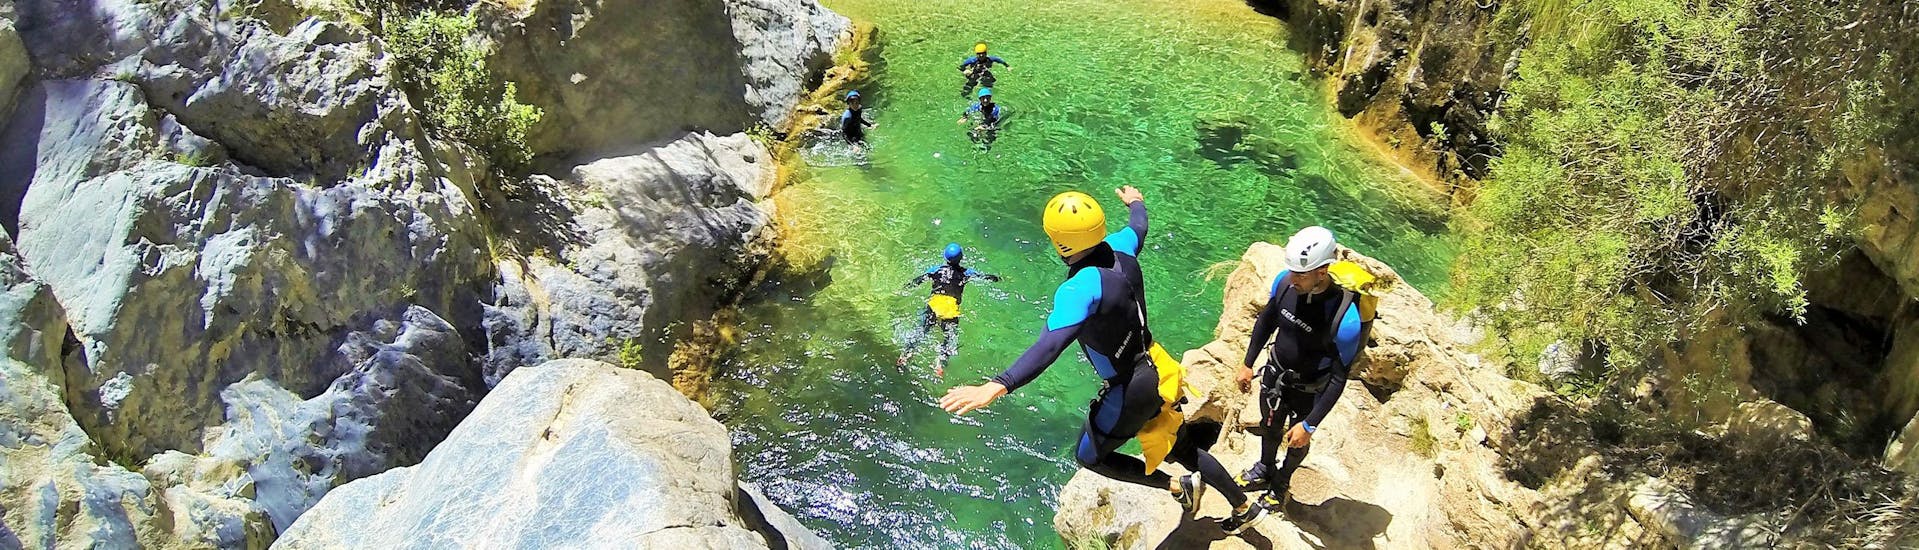 Un grupo de amigos saltan desde el acantilado al agua cristalina durante el Canyoning para Principiantes en Río Verde, organizado por Barranquismo Río Verde.